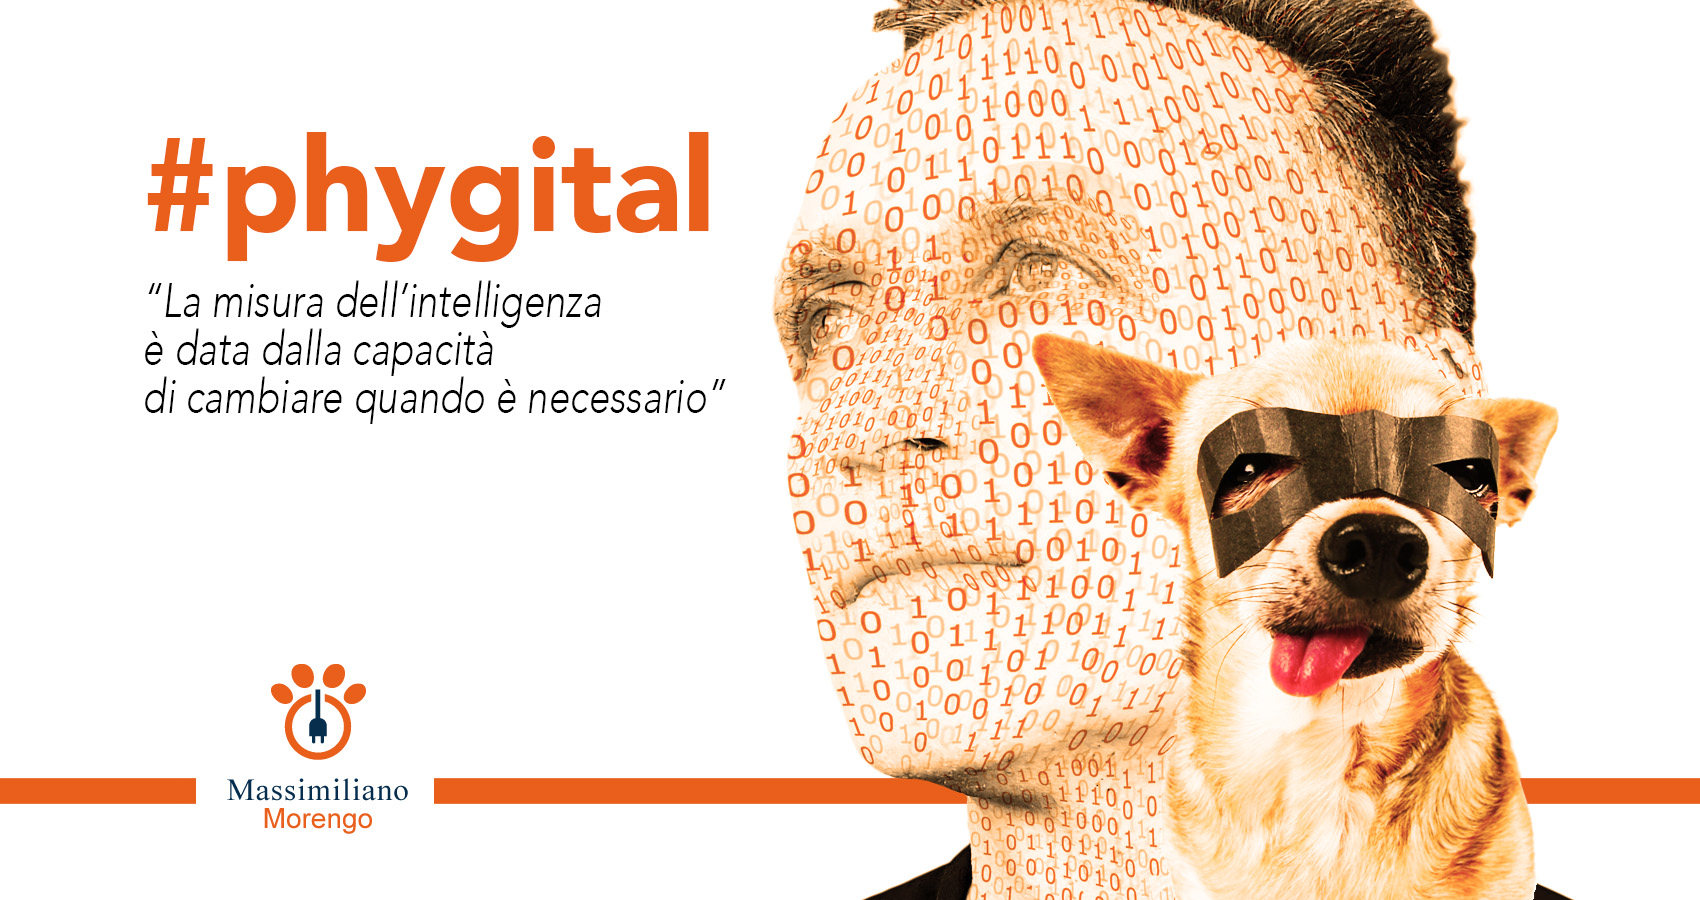 Pet Phygital Marketing - Massimiliano Morengo